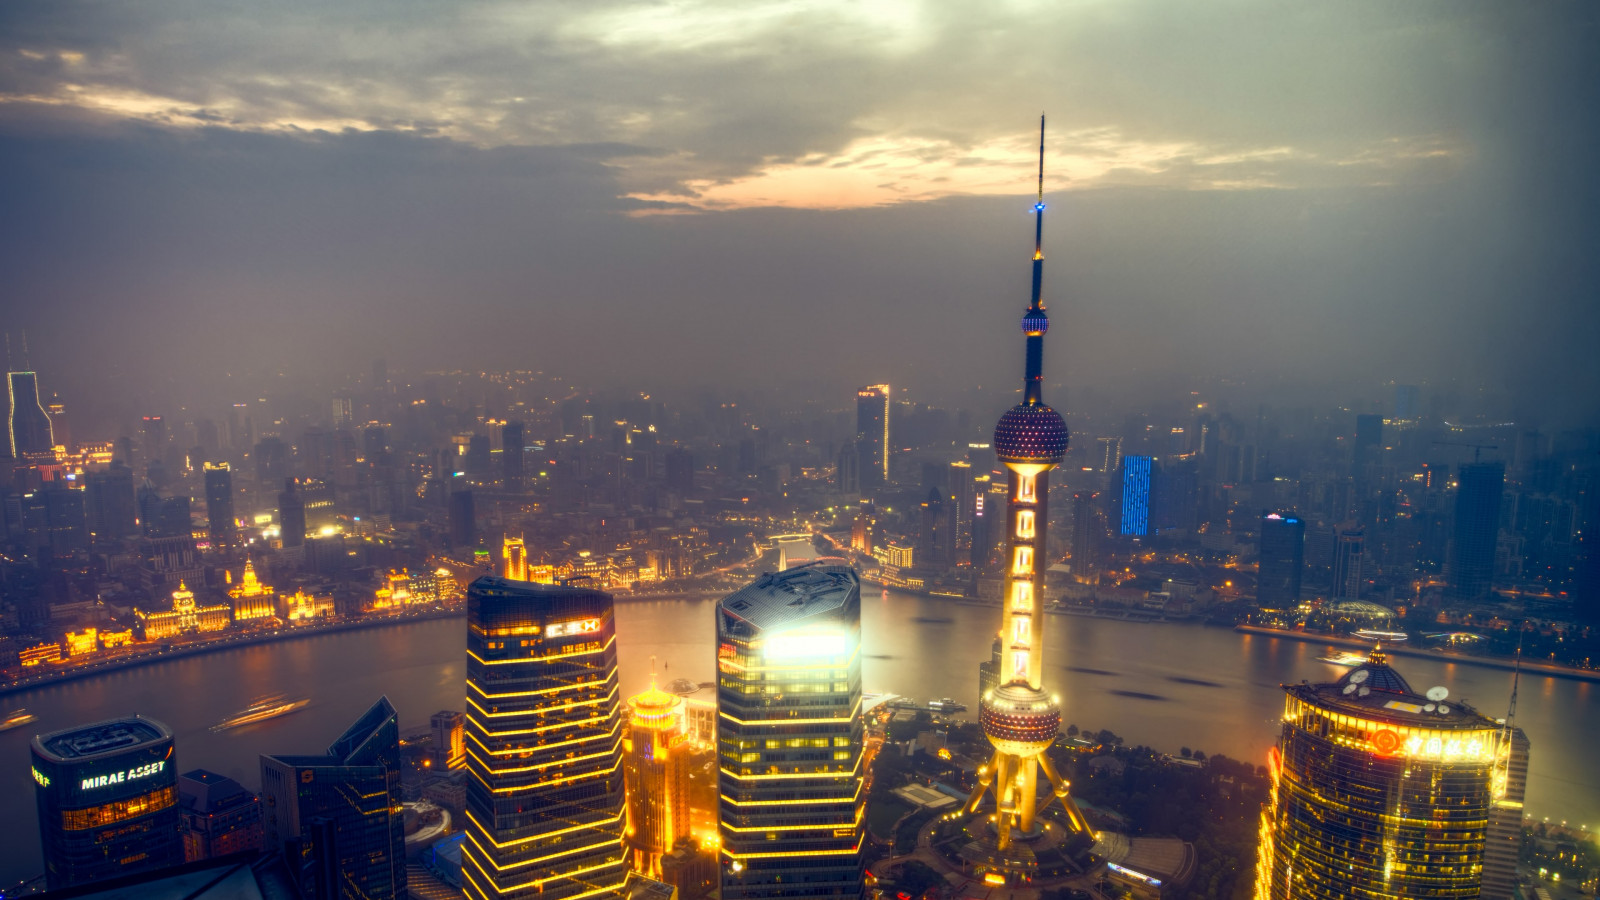 Sunset over Shanghai wallpaper 1600x900